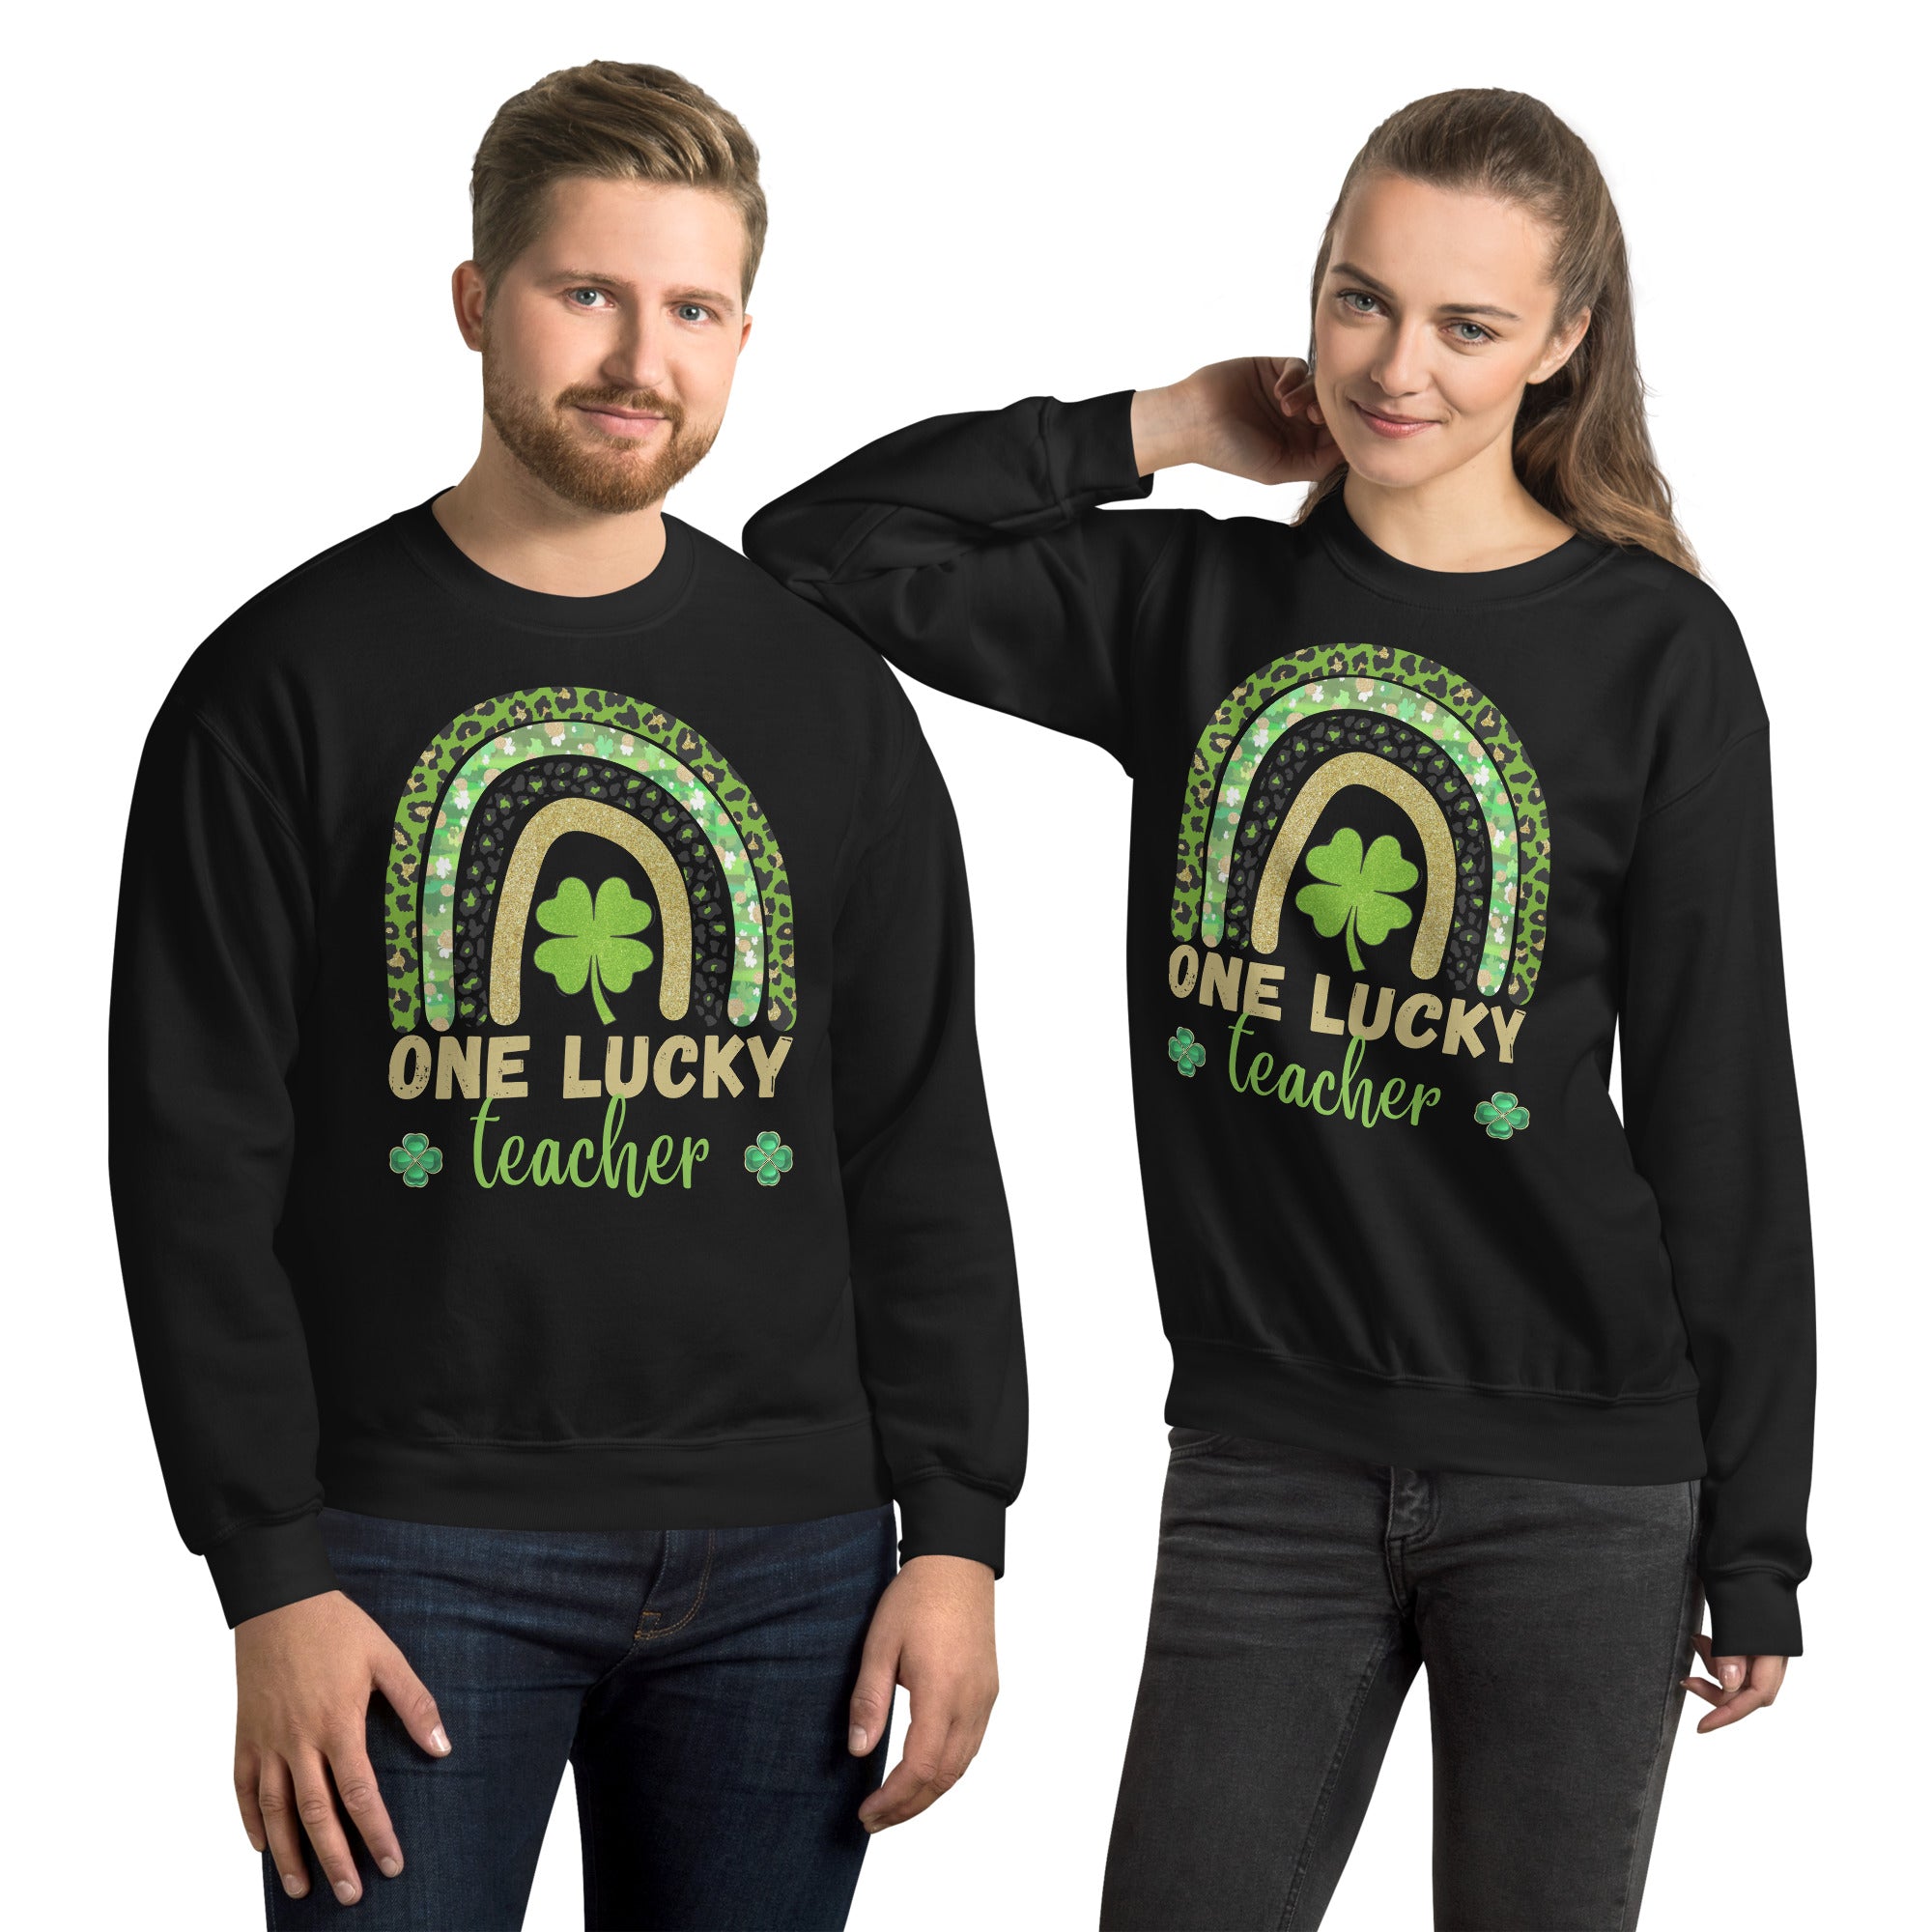 One Lucky Teacher Rainbow Sweatshirt, St Patricks Day Teacher shirt, Irish Teacher shirt, Green Shamrock Teacher Shirt, St Pattys Gifts